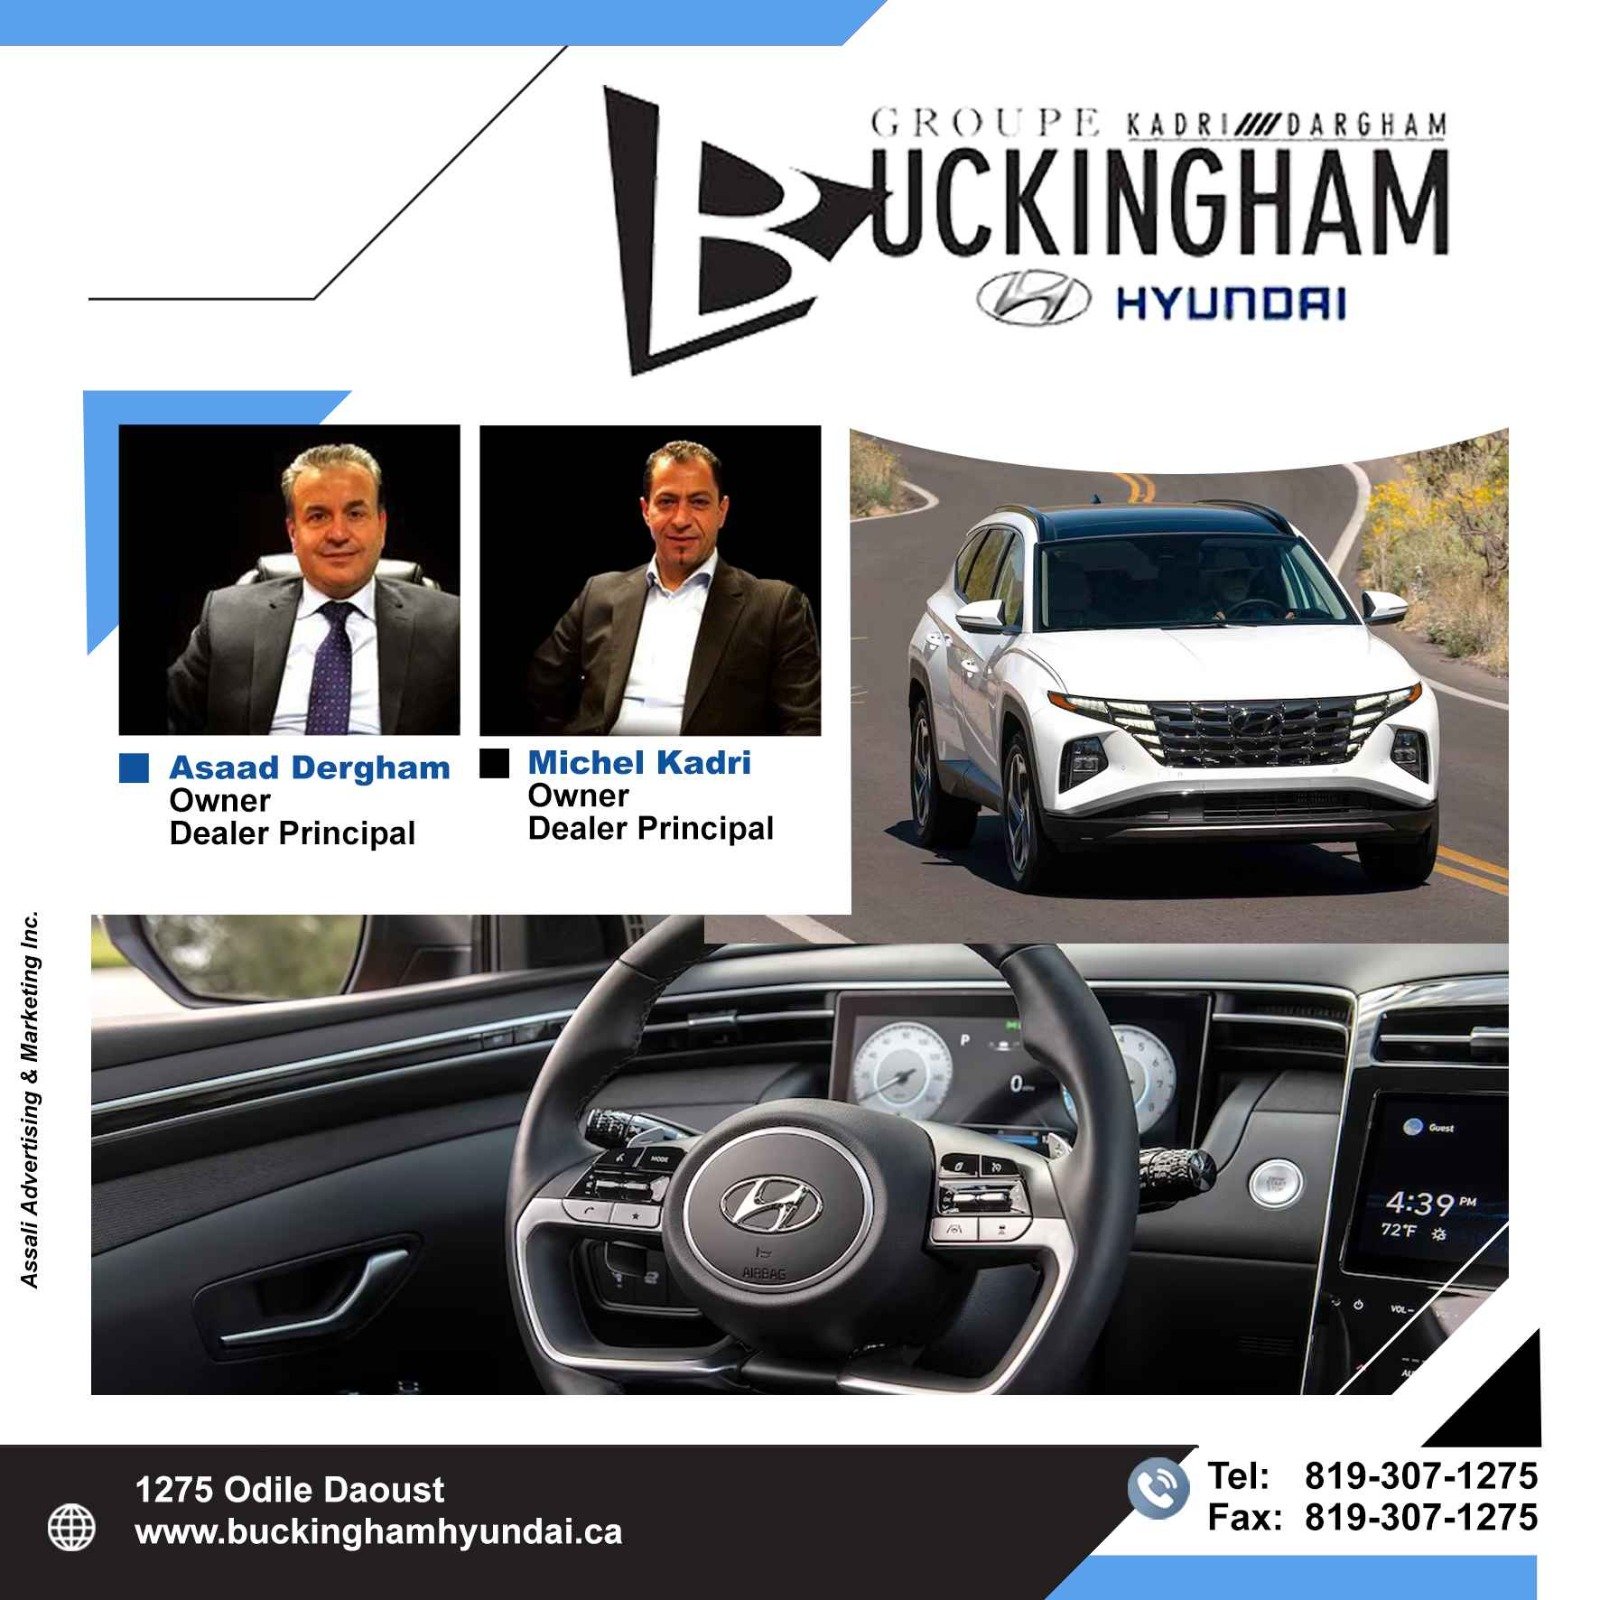 BUCKINGHAM Hyundai Car Dealership